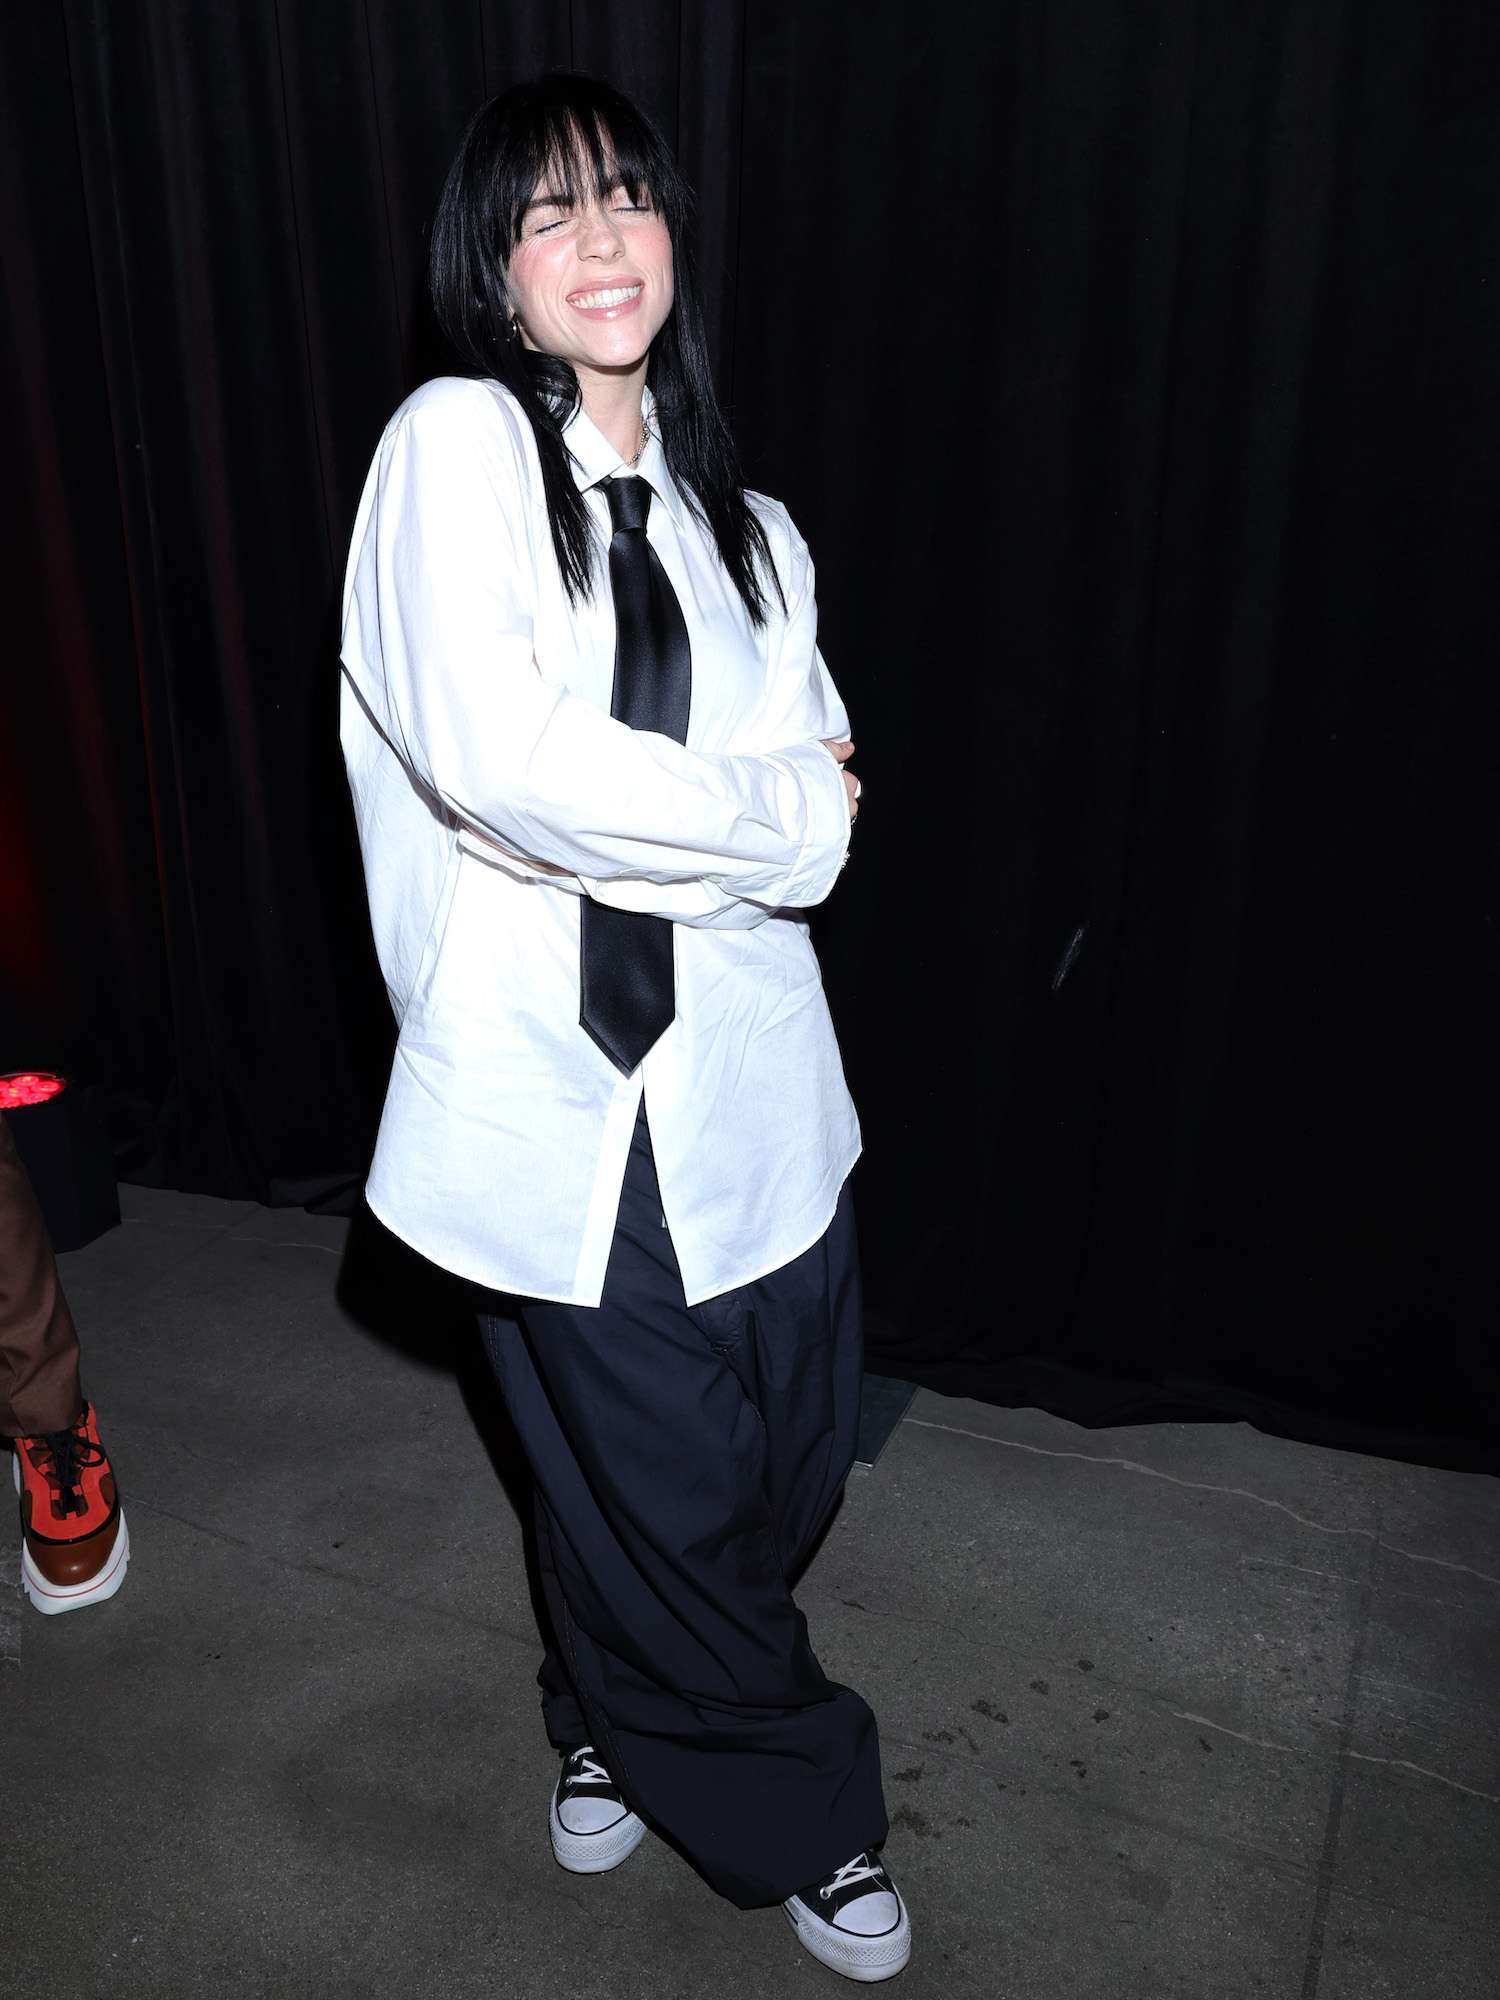 Billie Eilish usa camisa branca de botão, gravata preta e calça preta larga na estreia de The Swarm.